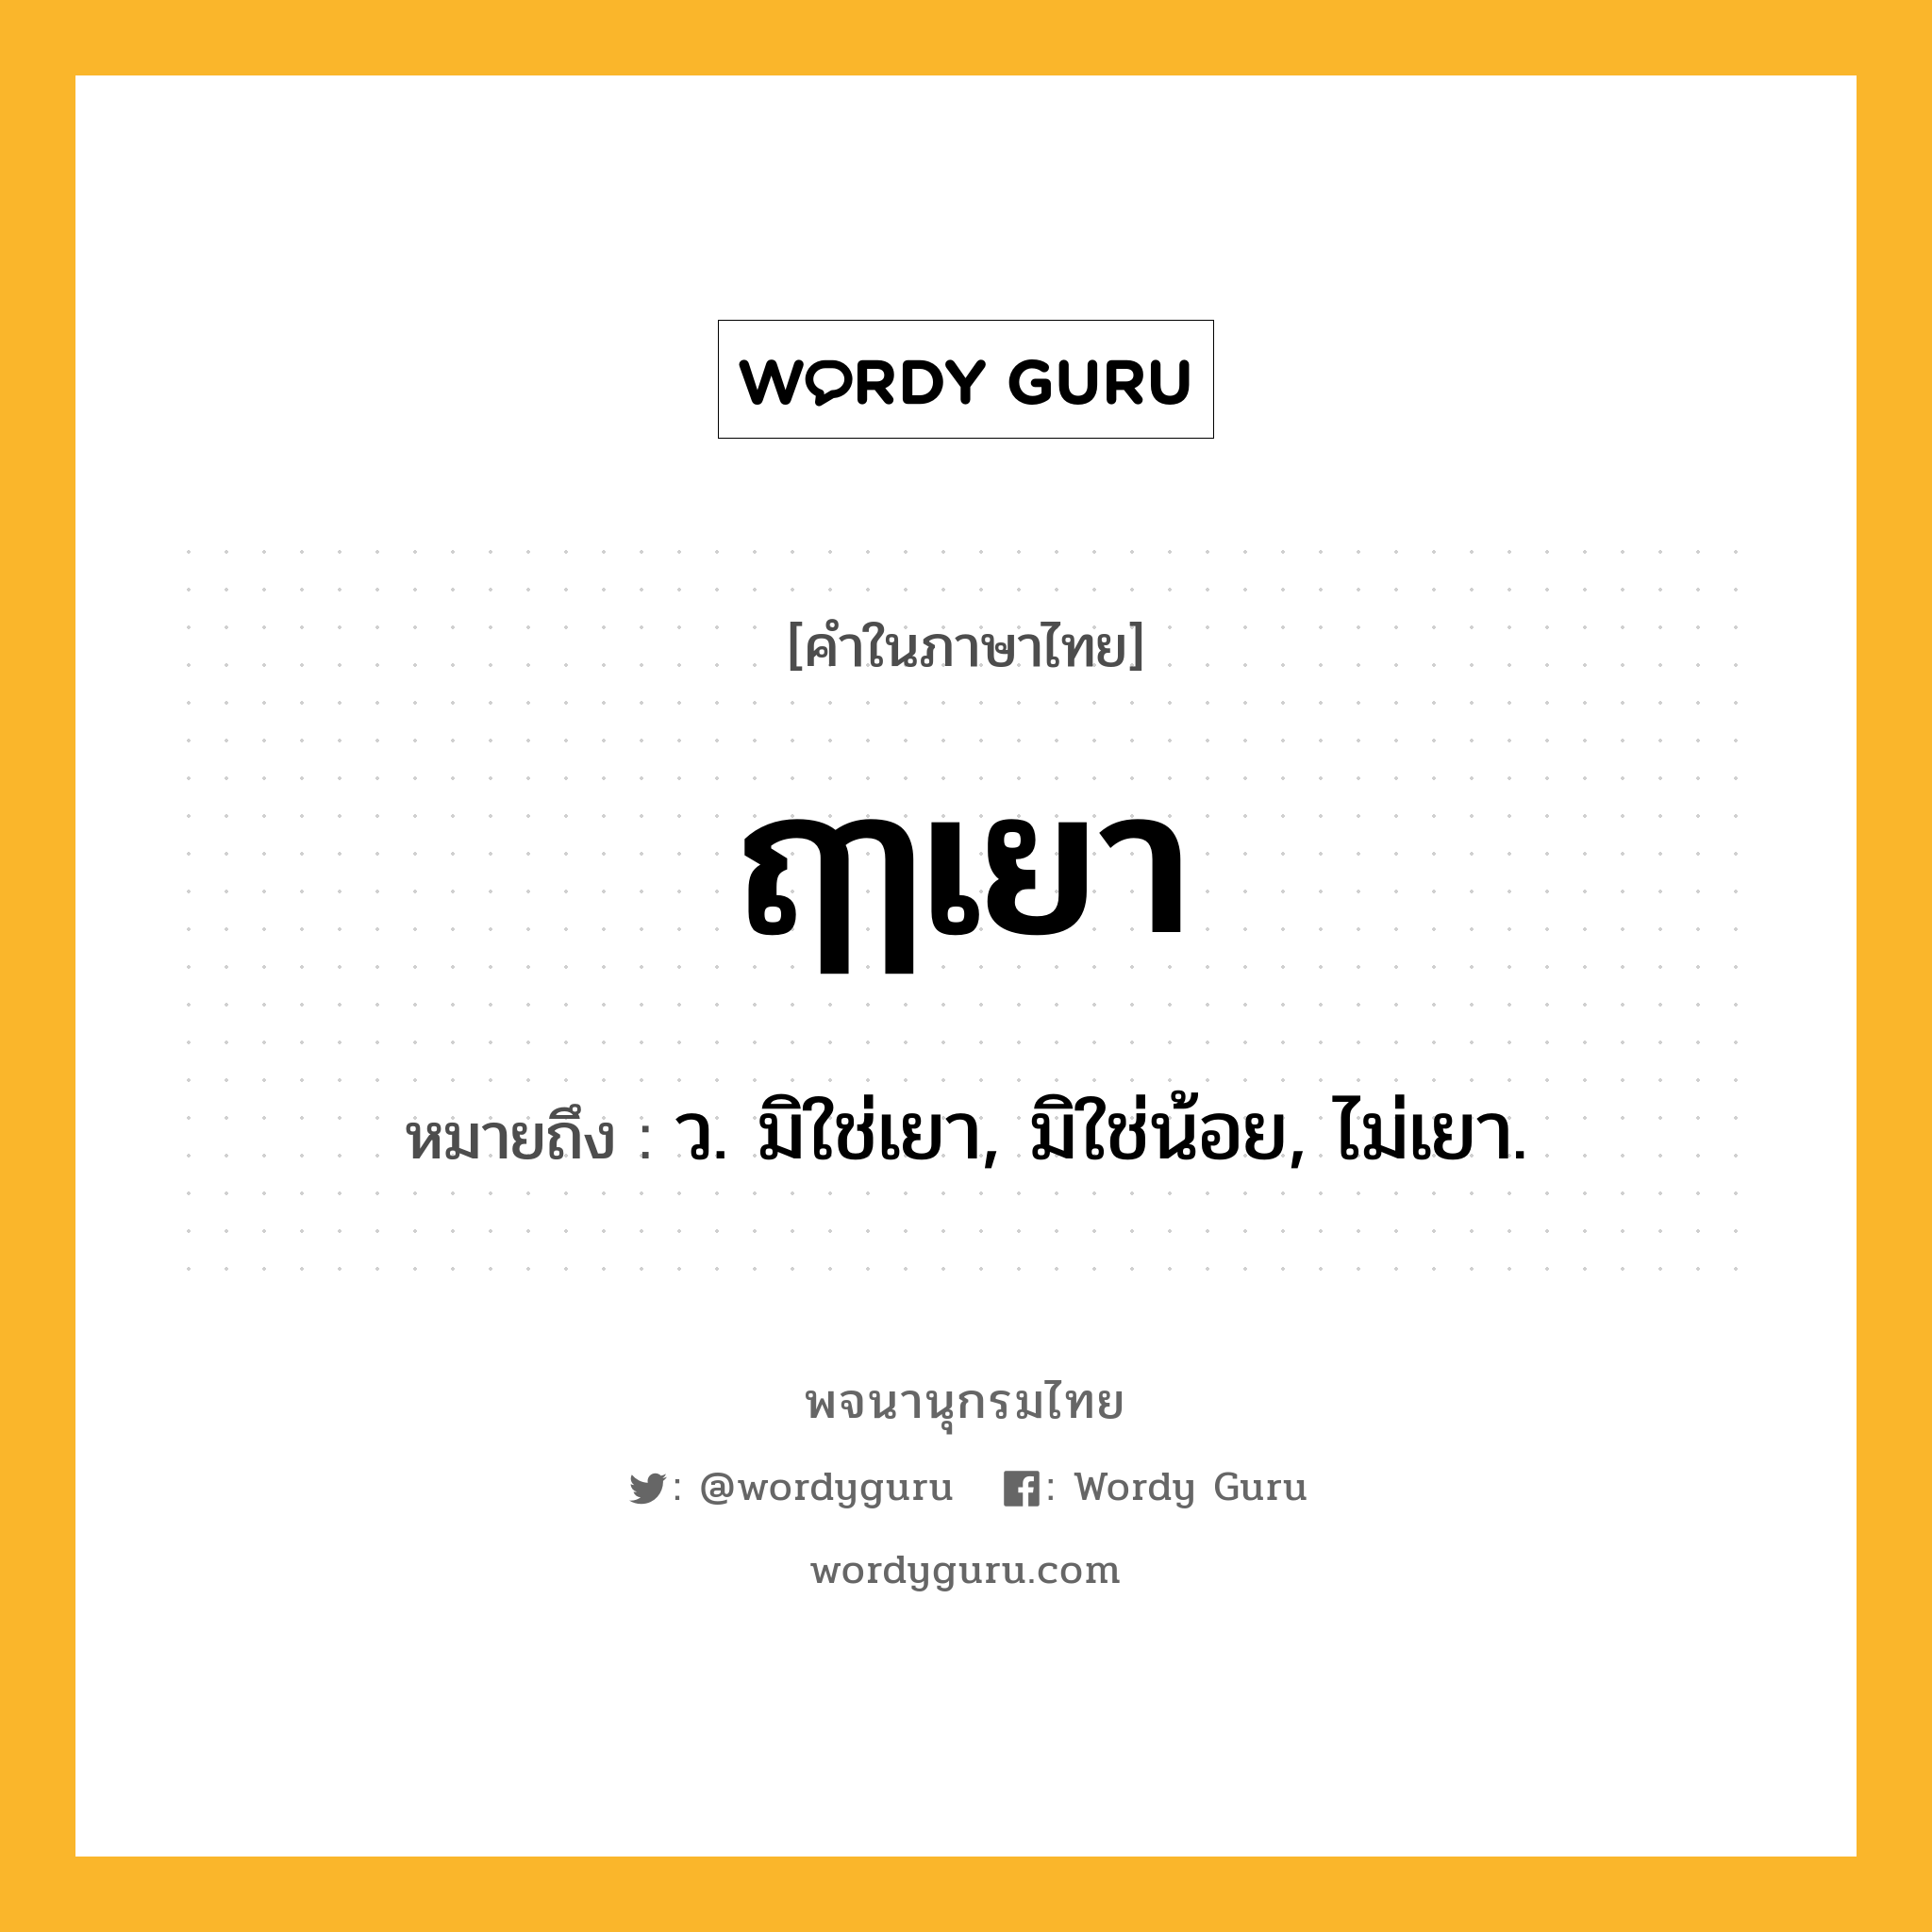 ฤๅเยา ความหมาย หมายถึงอะไร?, คำในภาษาไทย ฤๅเยา หมายถึง ว. มิใช่เยา, มิใช่น้อย, ไม่เยา.